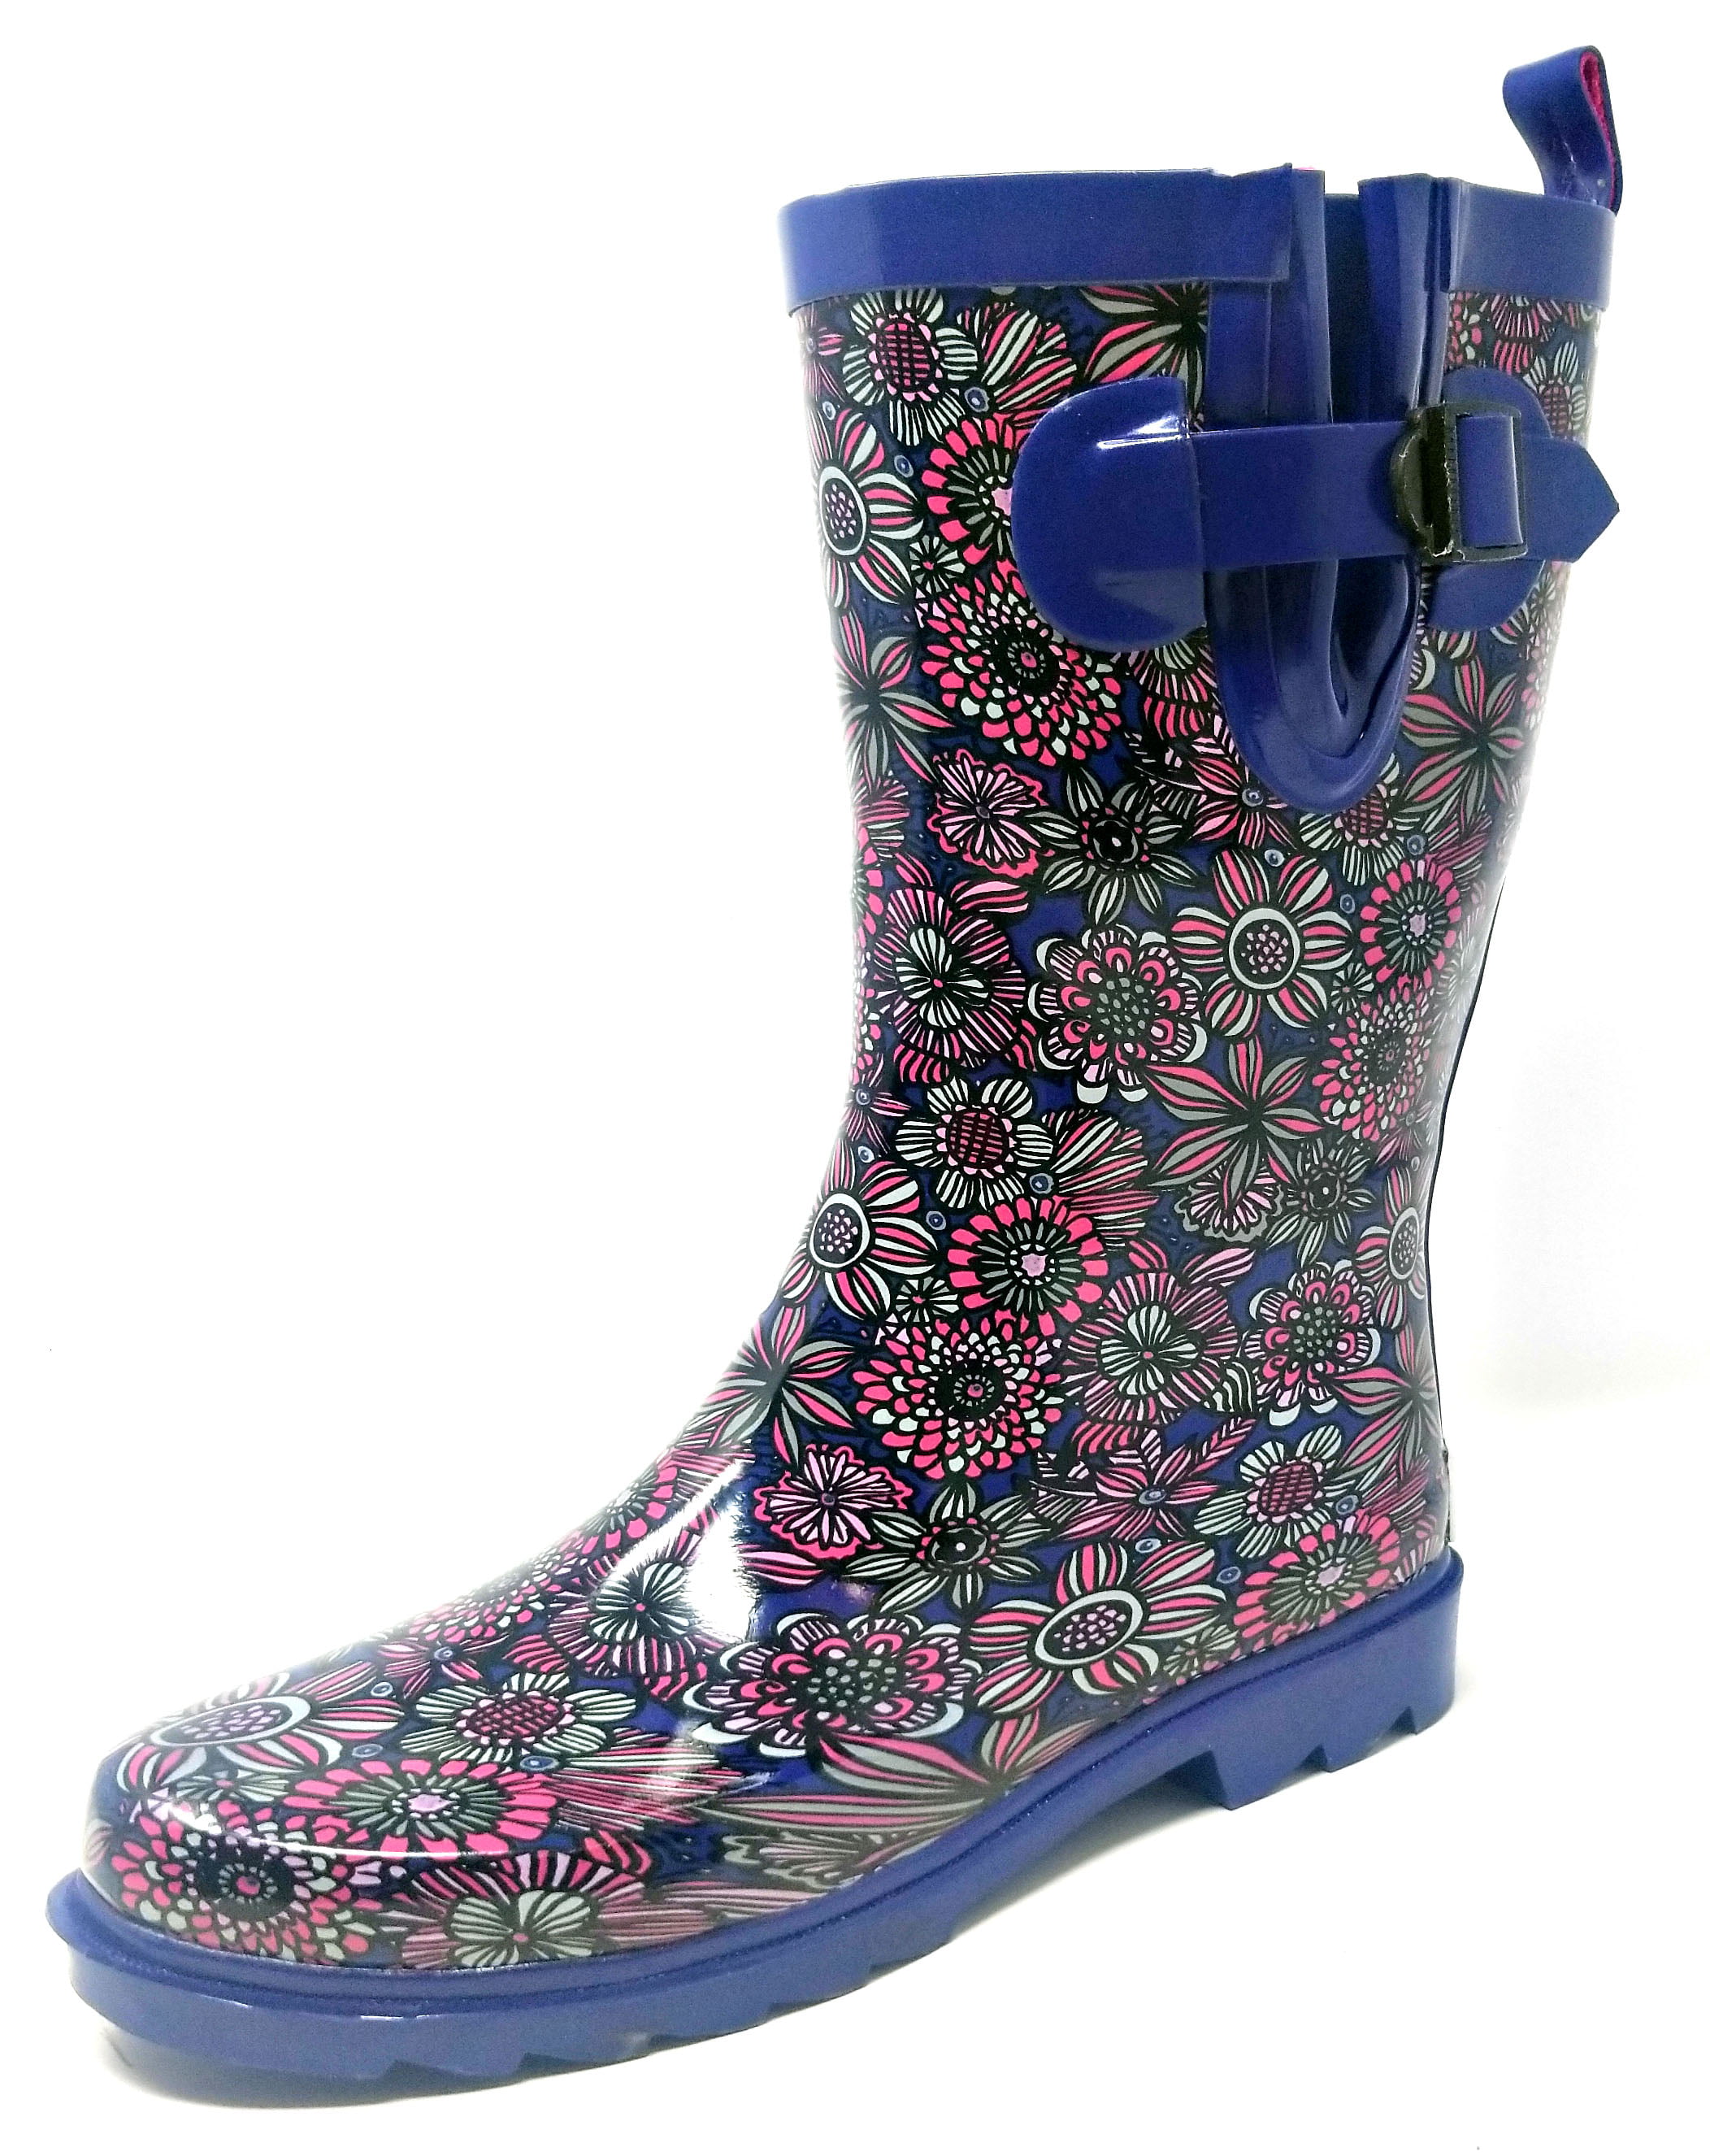 Women Rubber Rain Boots 11 Mid Calf Waterproof Garden Boots Blue